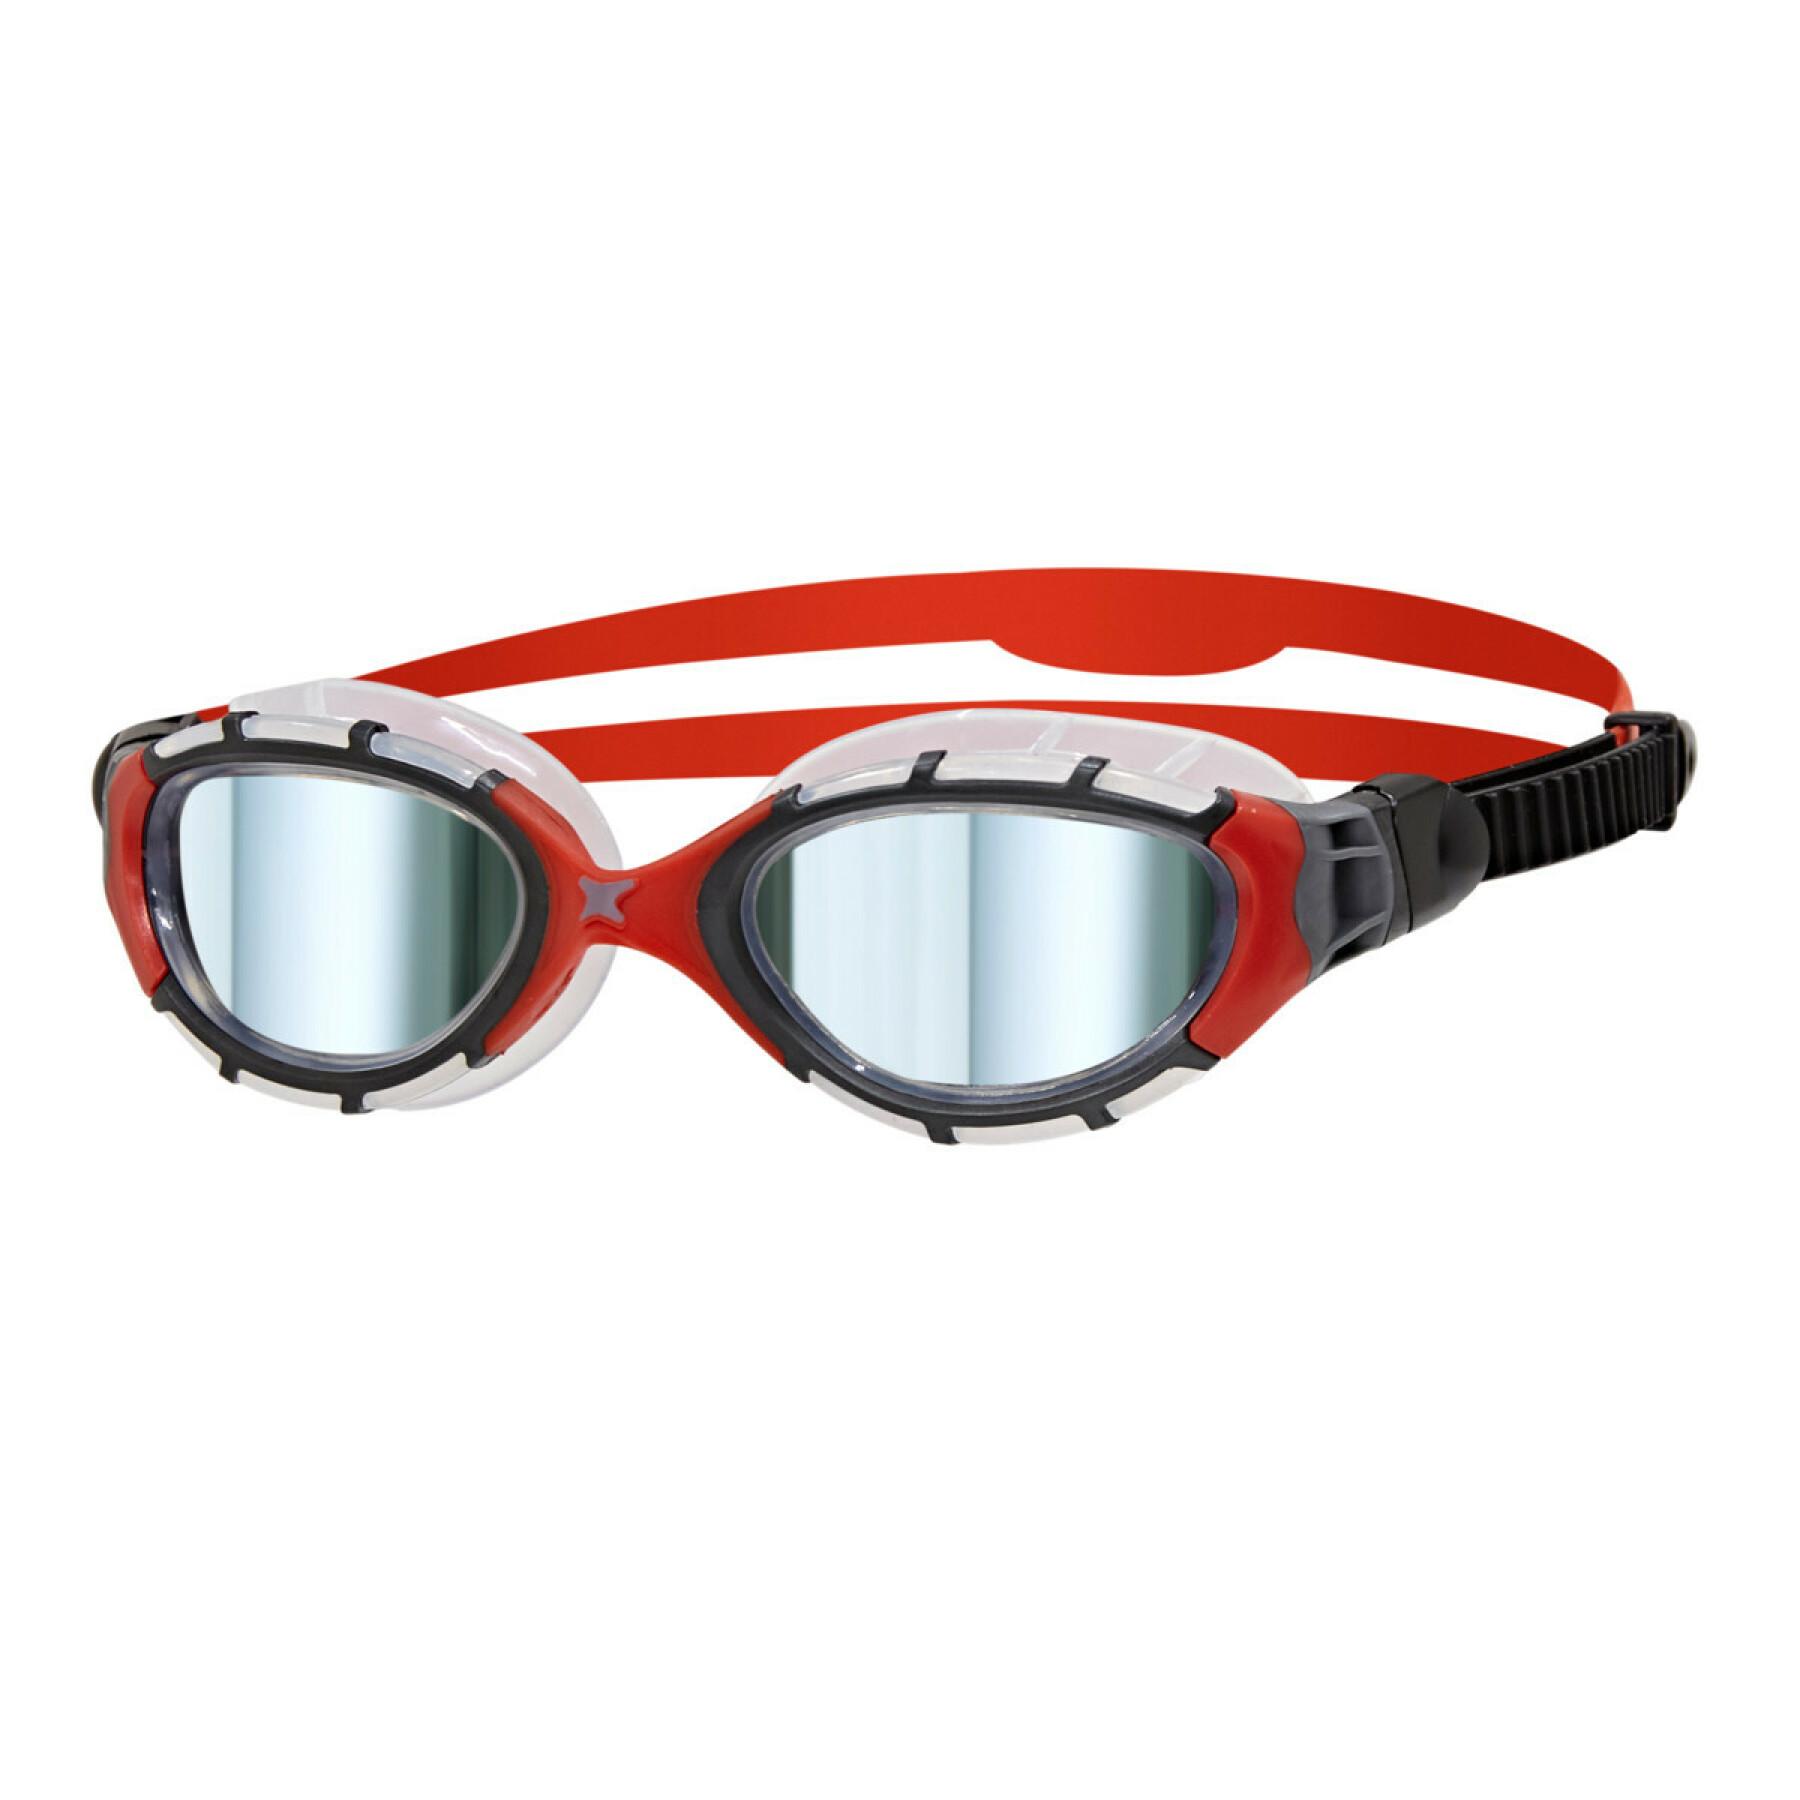 Gafas de natación Zoggs Predator Flex